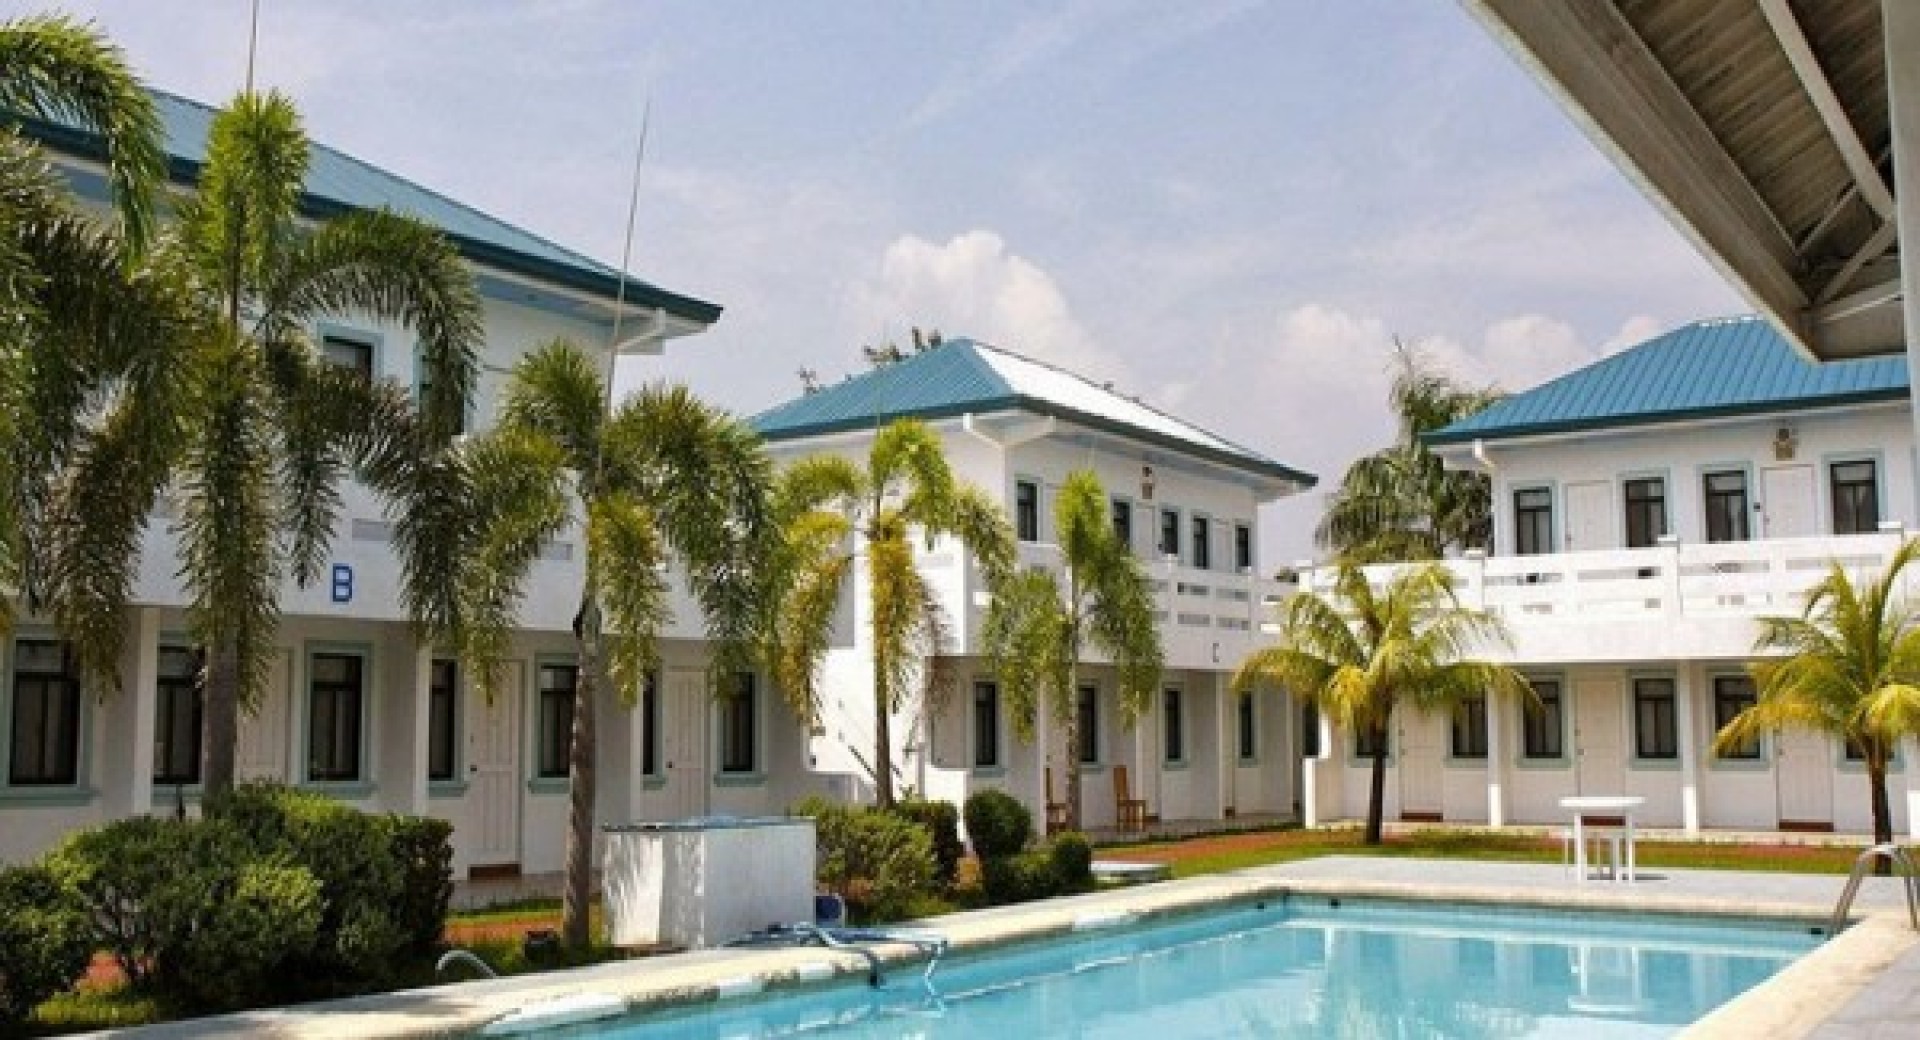 Du học Philippines với 3 khóa học đặc trưng tại trường Anh ngữ Paramount